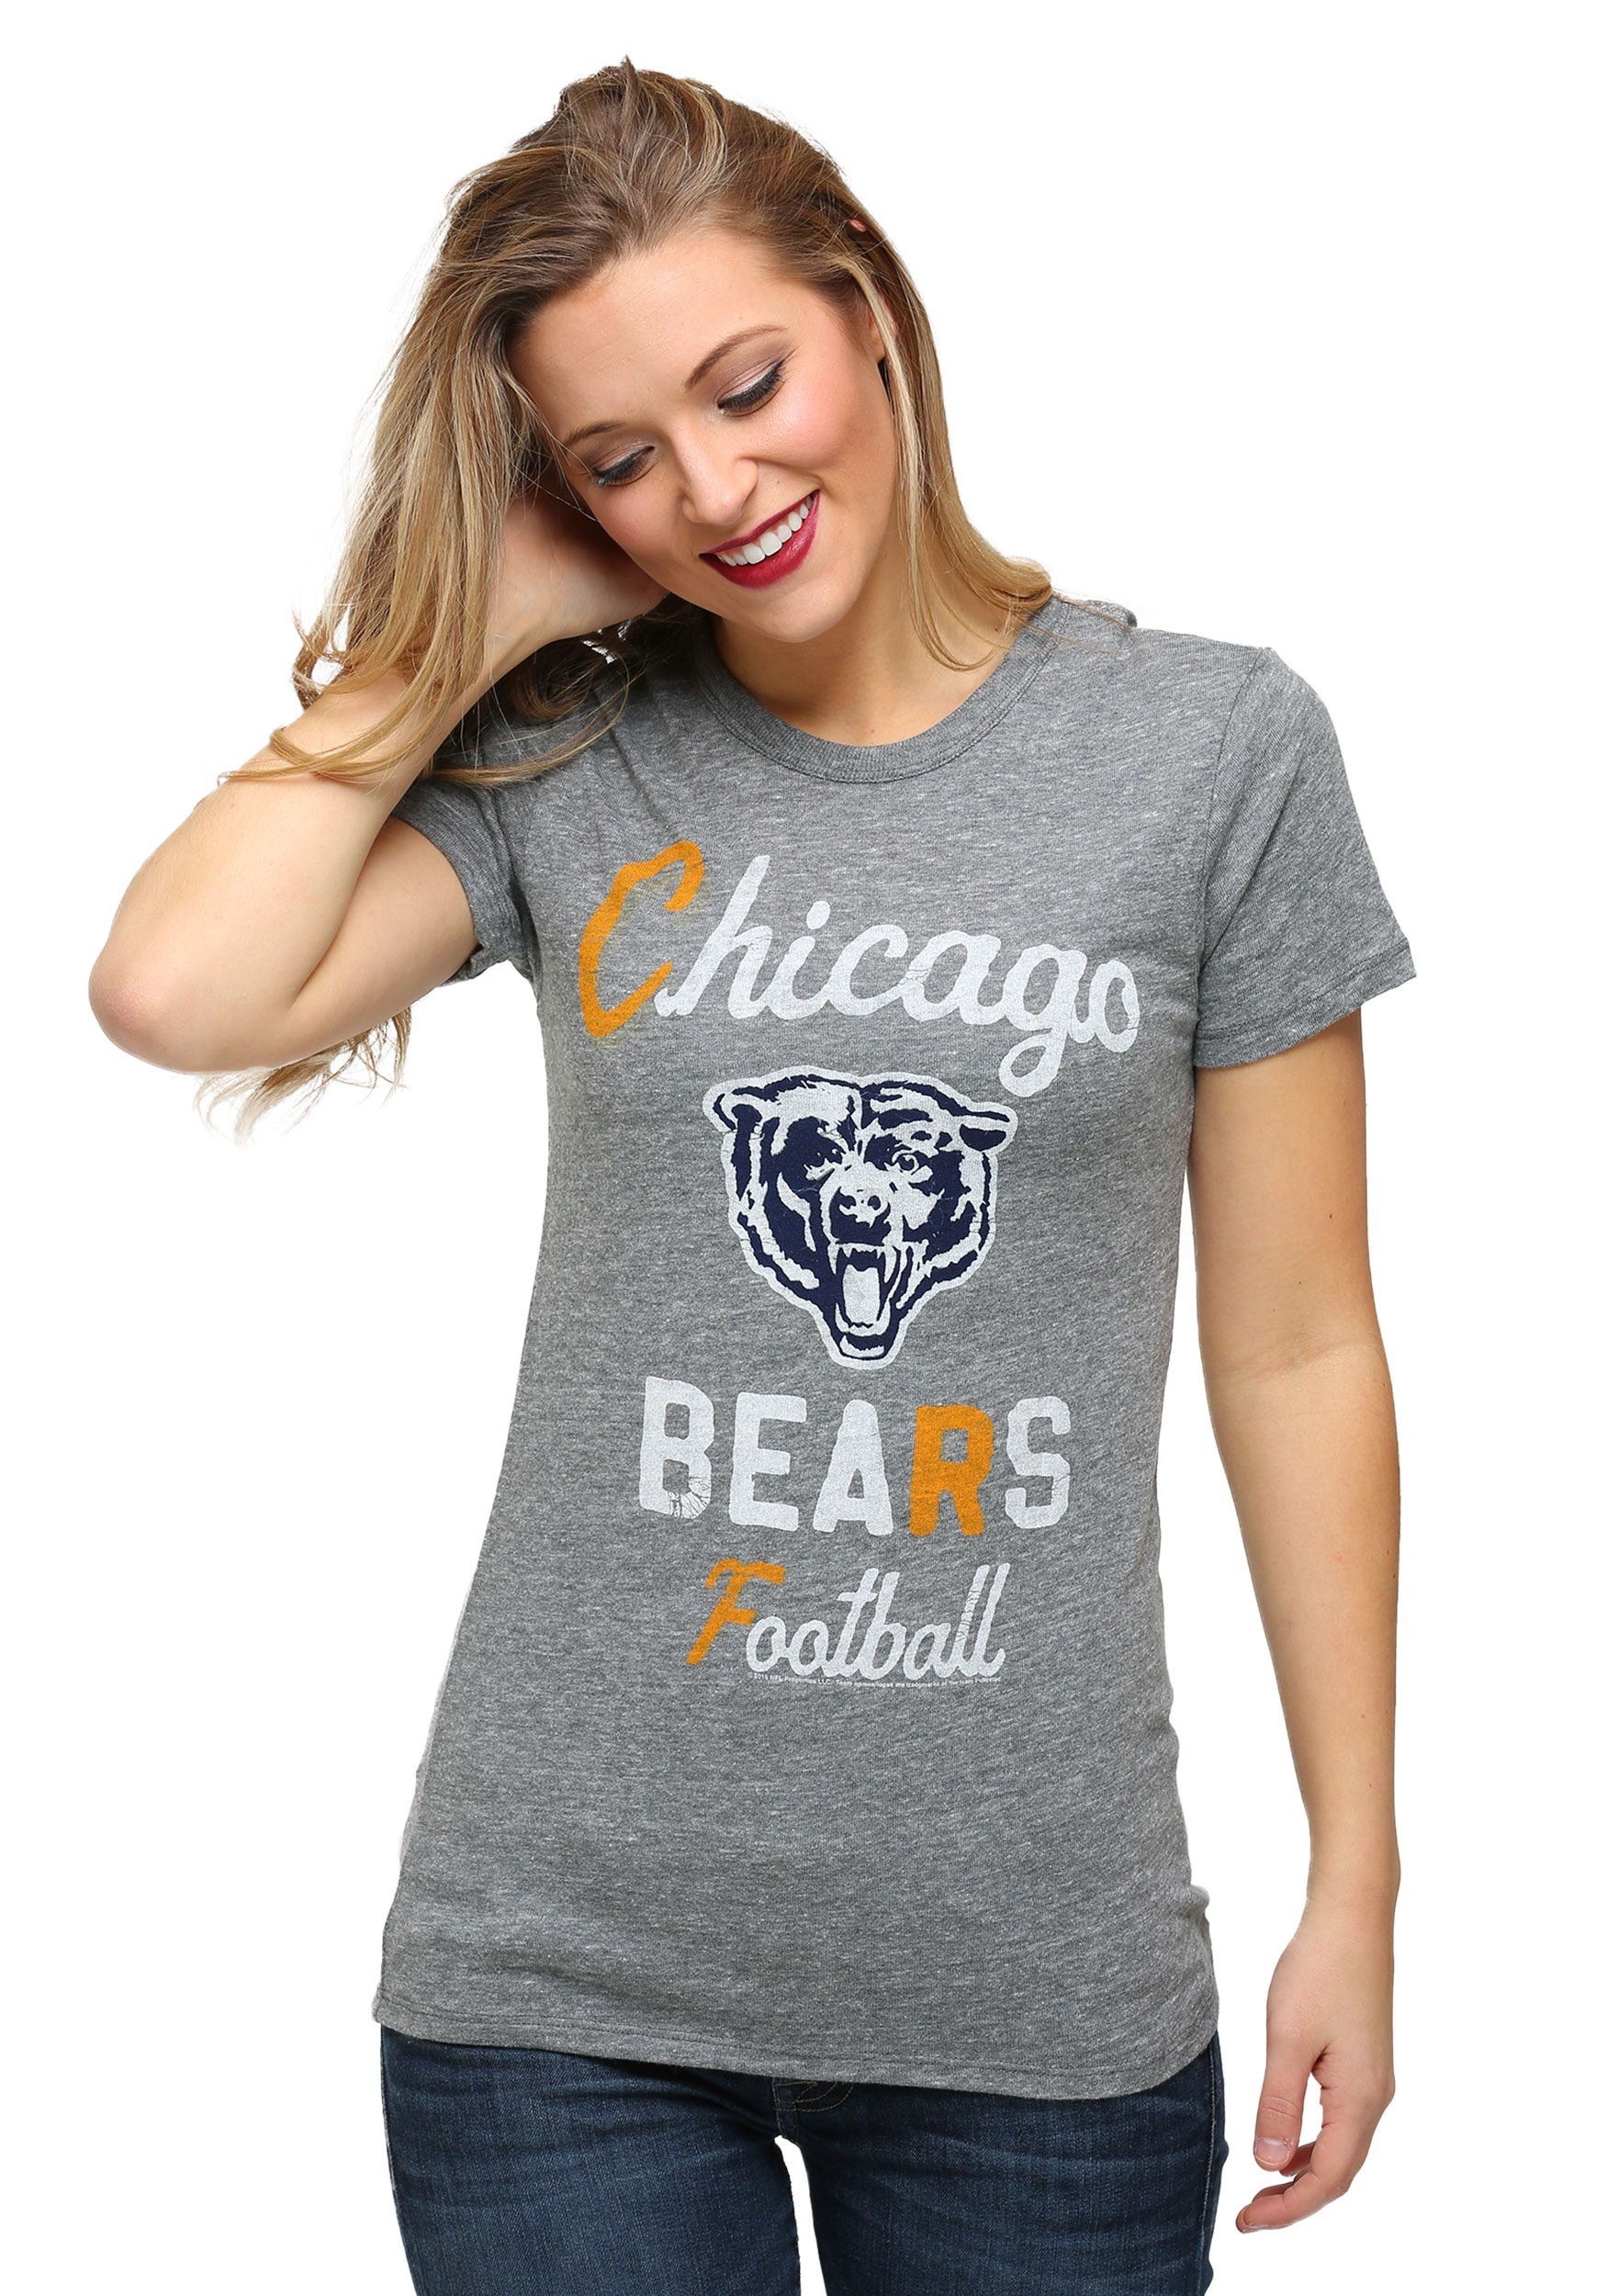 ladies chicago bears shirt